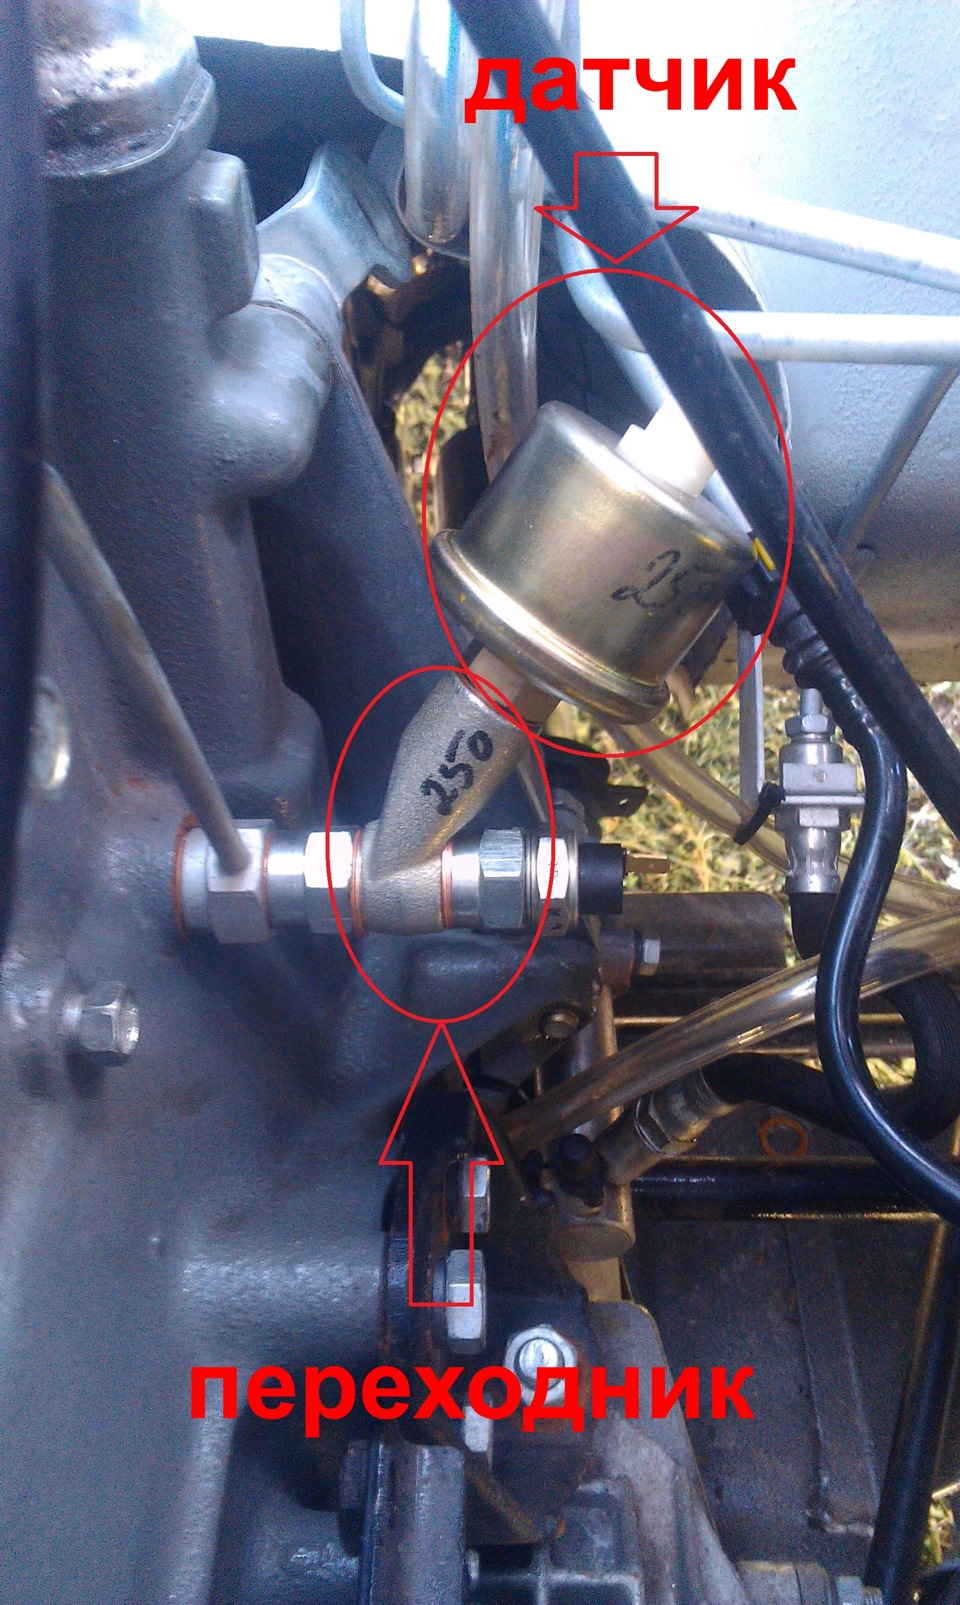 Давление масла д245. Датчик аварийного давления масла для двигателя д243. Датчик давления масла д245 е3. Датчик давления масла д245 е4. Механический датчик давления масла мотор д 245.